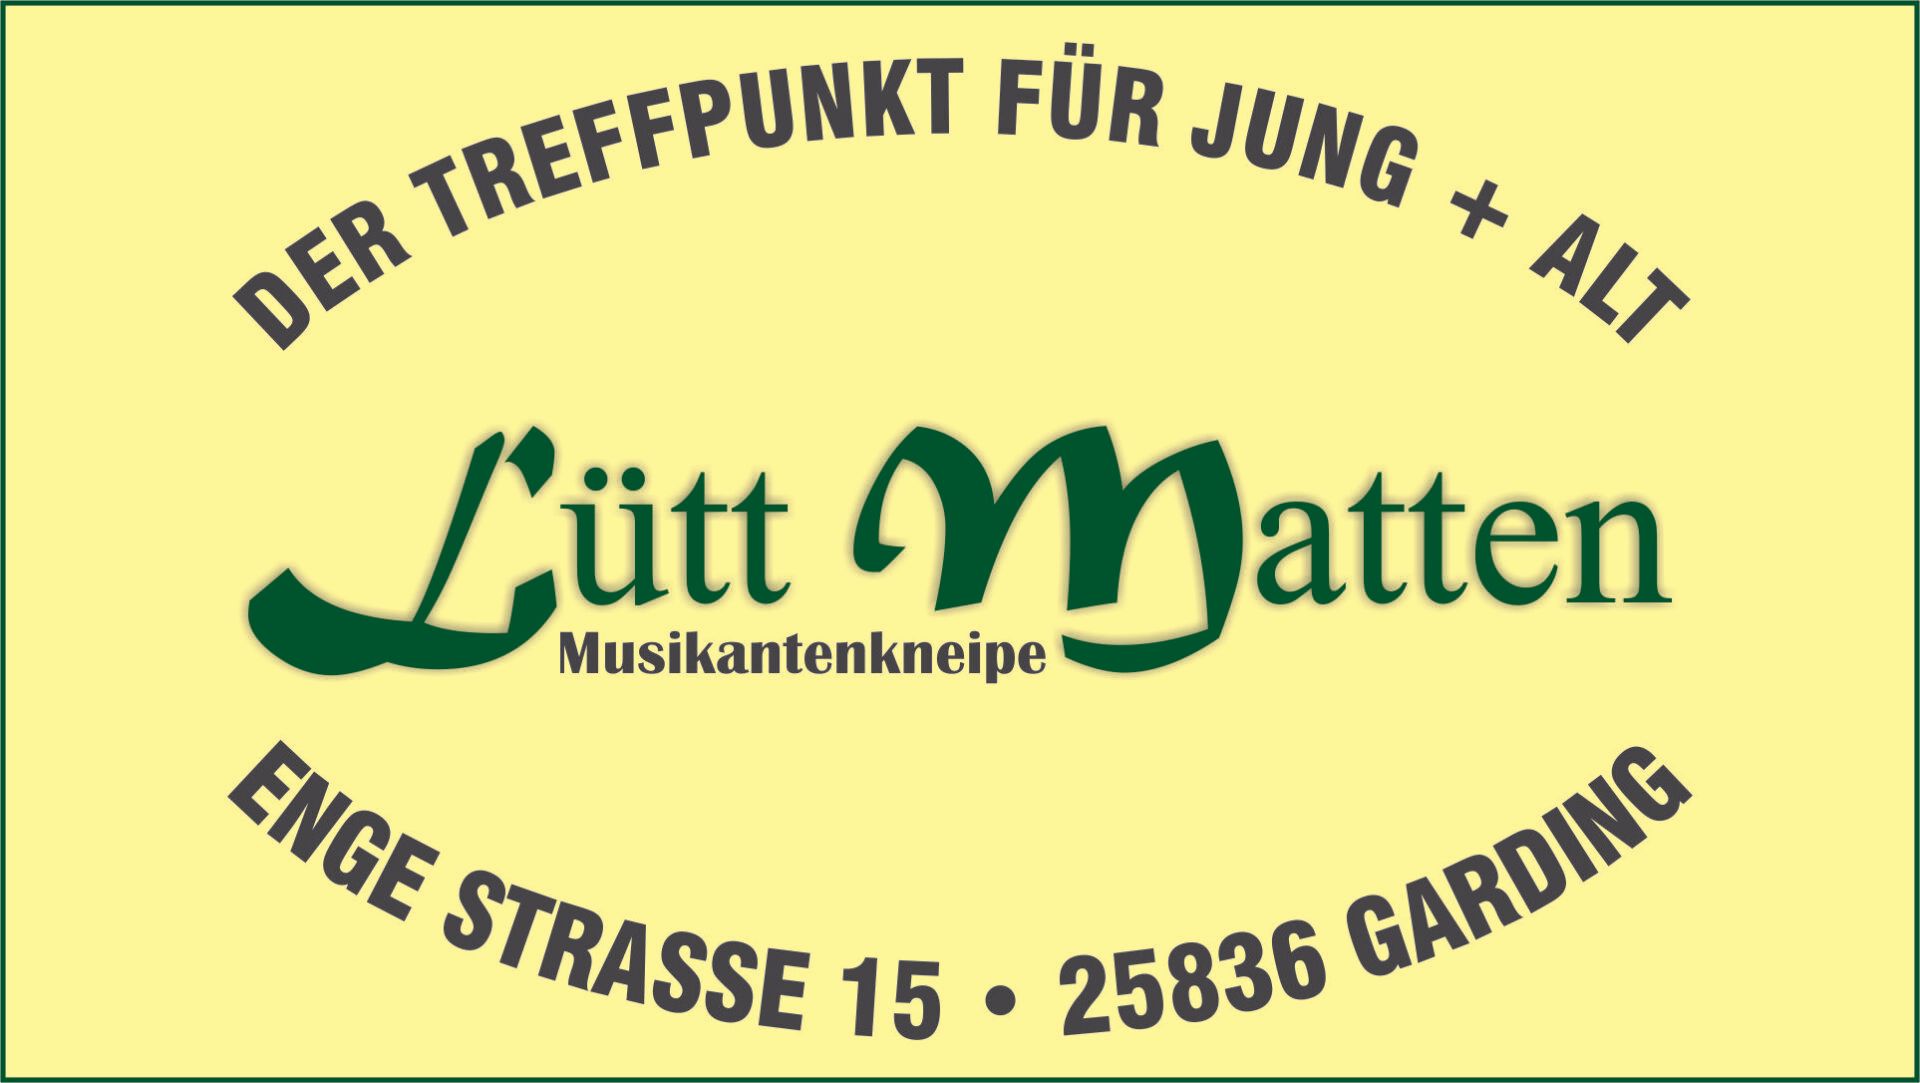 Lütt Matten in Garding auf Eiderstedt bei St. Peter-Ording